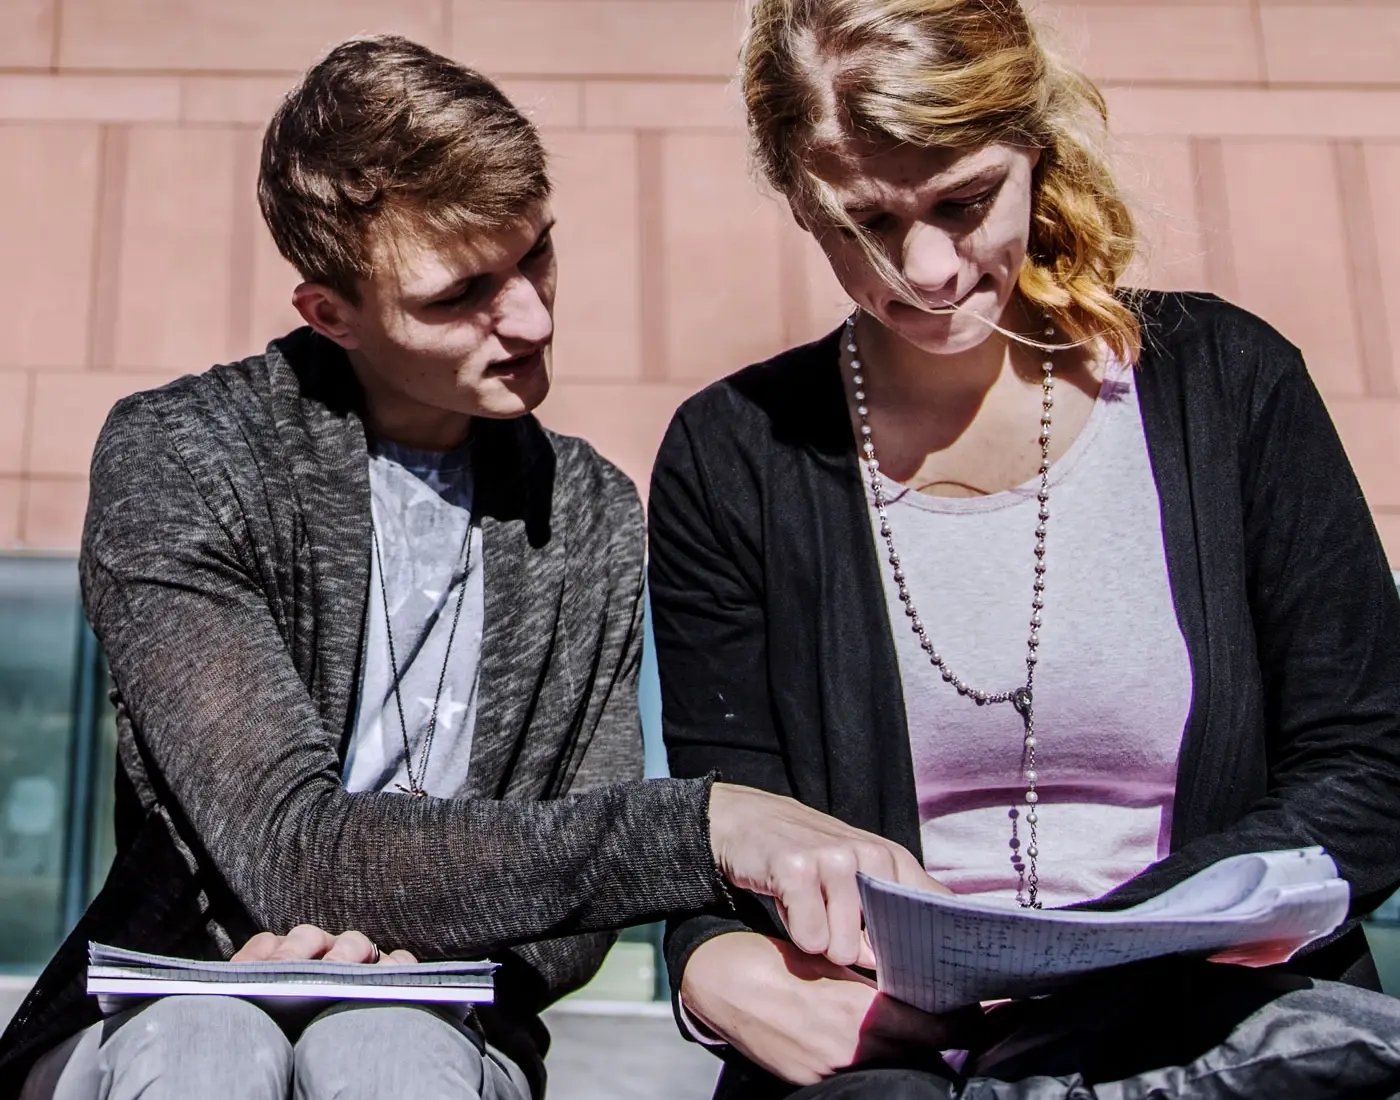 Ein Student und eine Studentin sitzen auf einer Bank und gehen gemeinsam ihre Aufzeichnungen durch